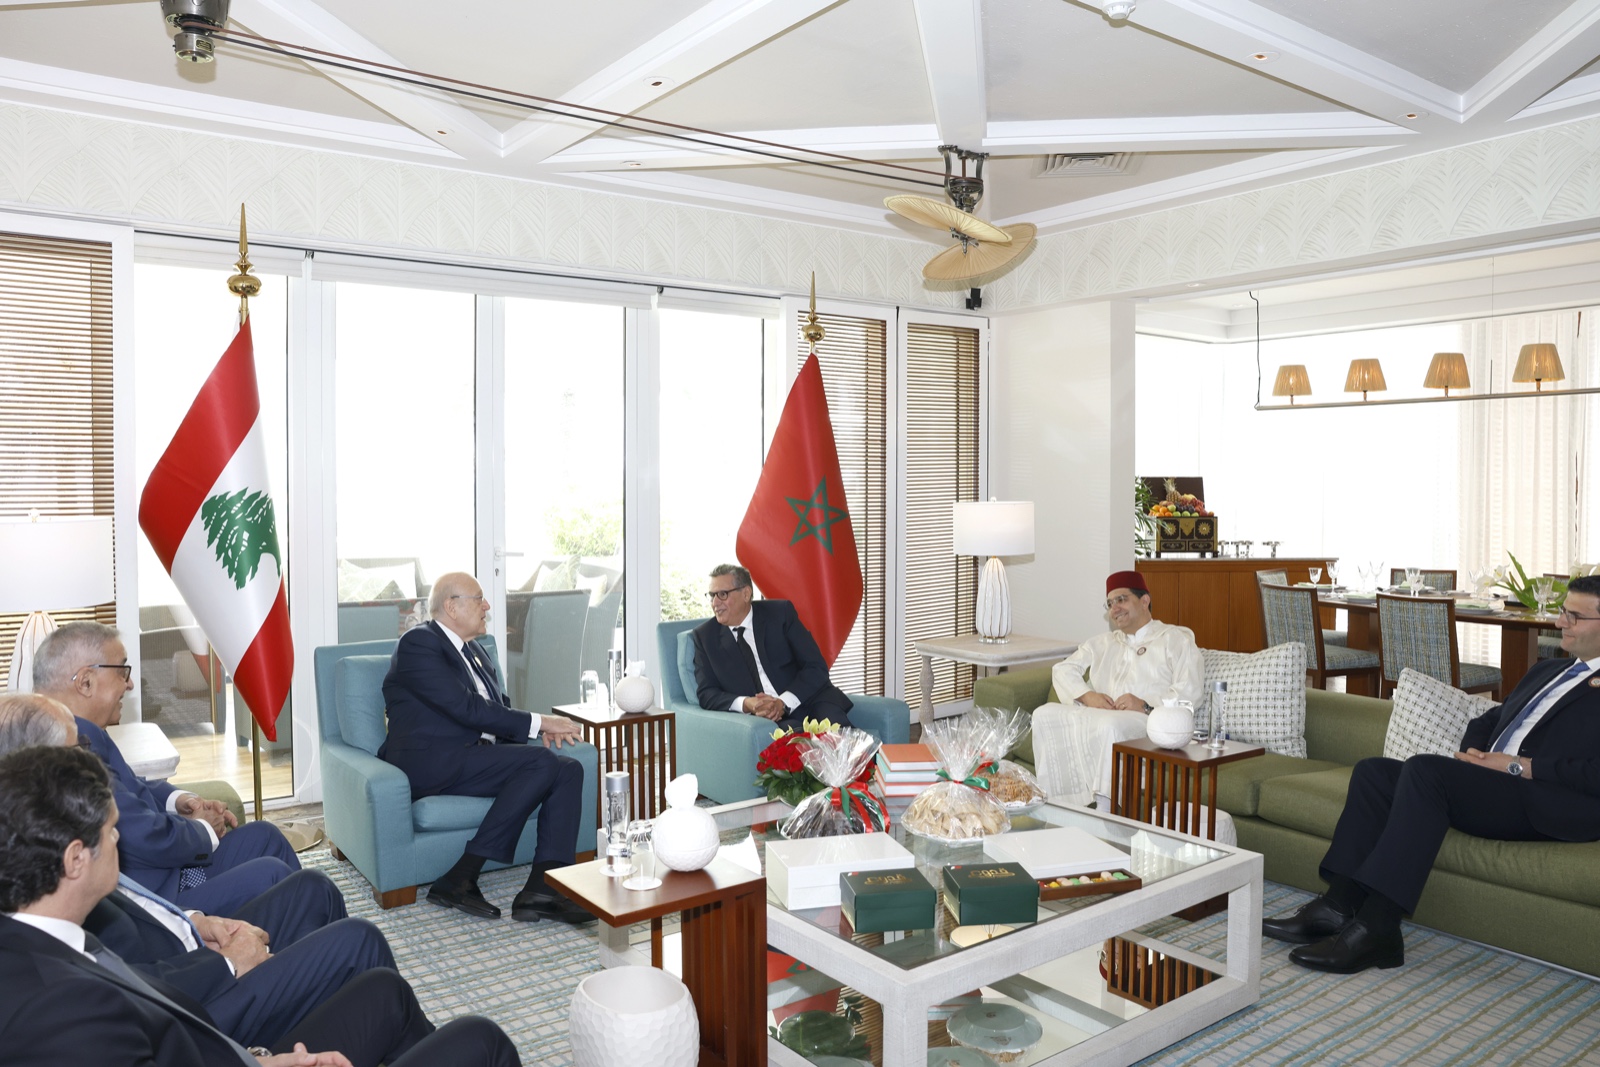 Sommet arabe de Manama: Akhannouch s'entretient avec le chef du gouvernement libanais